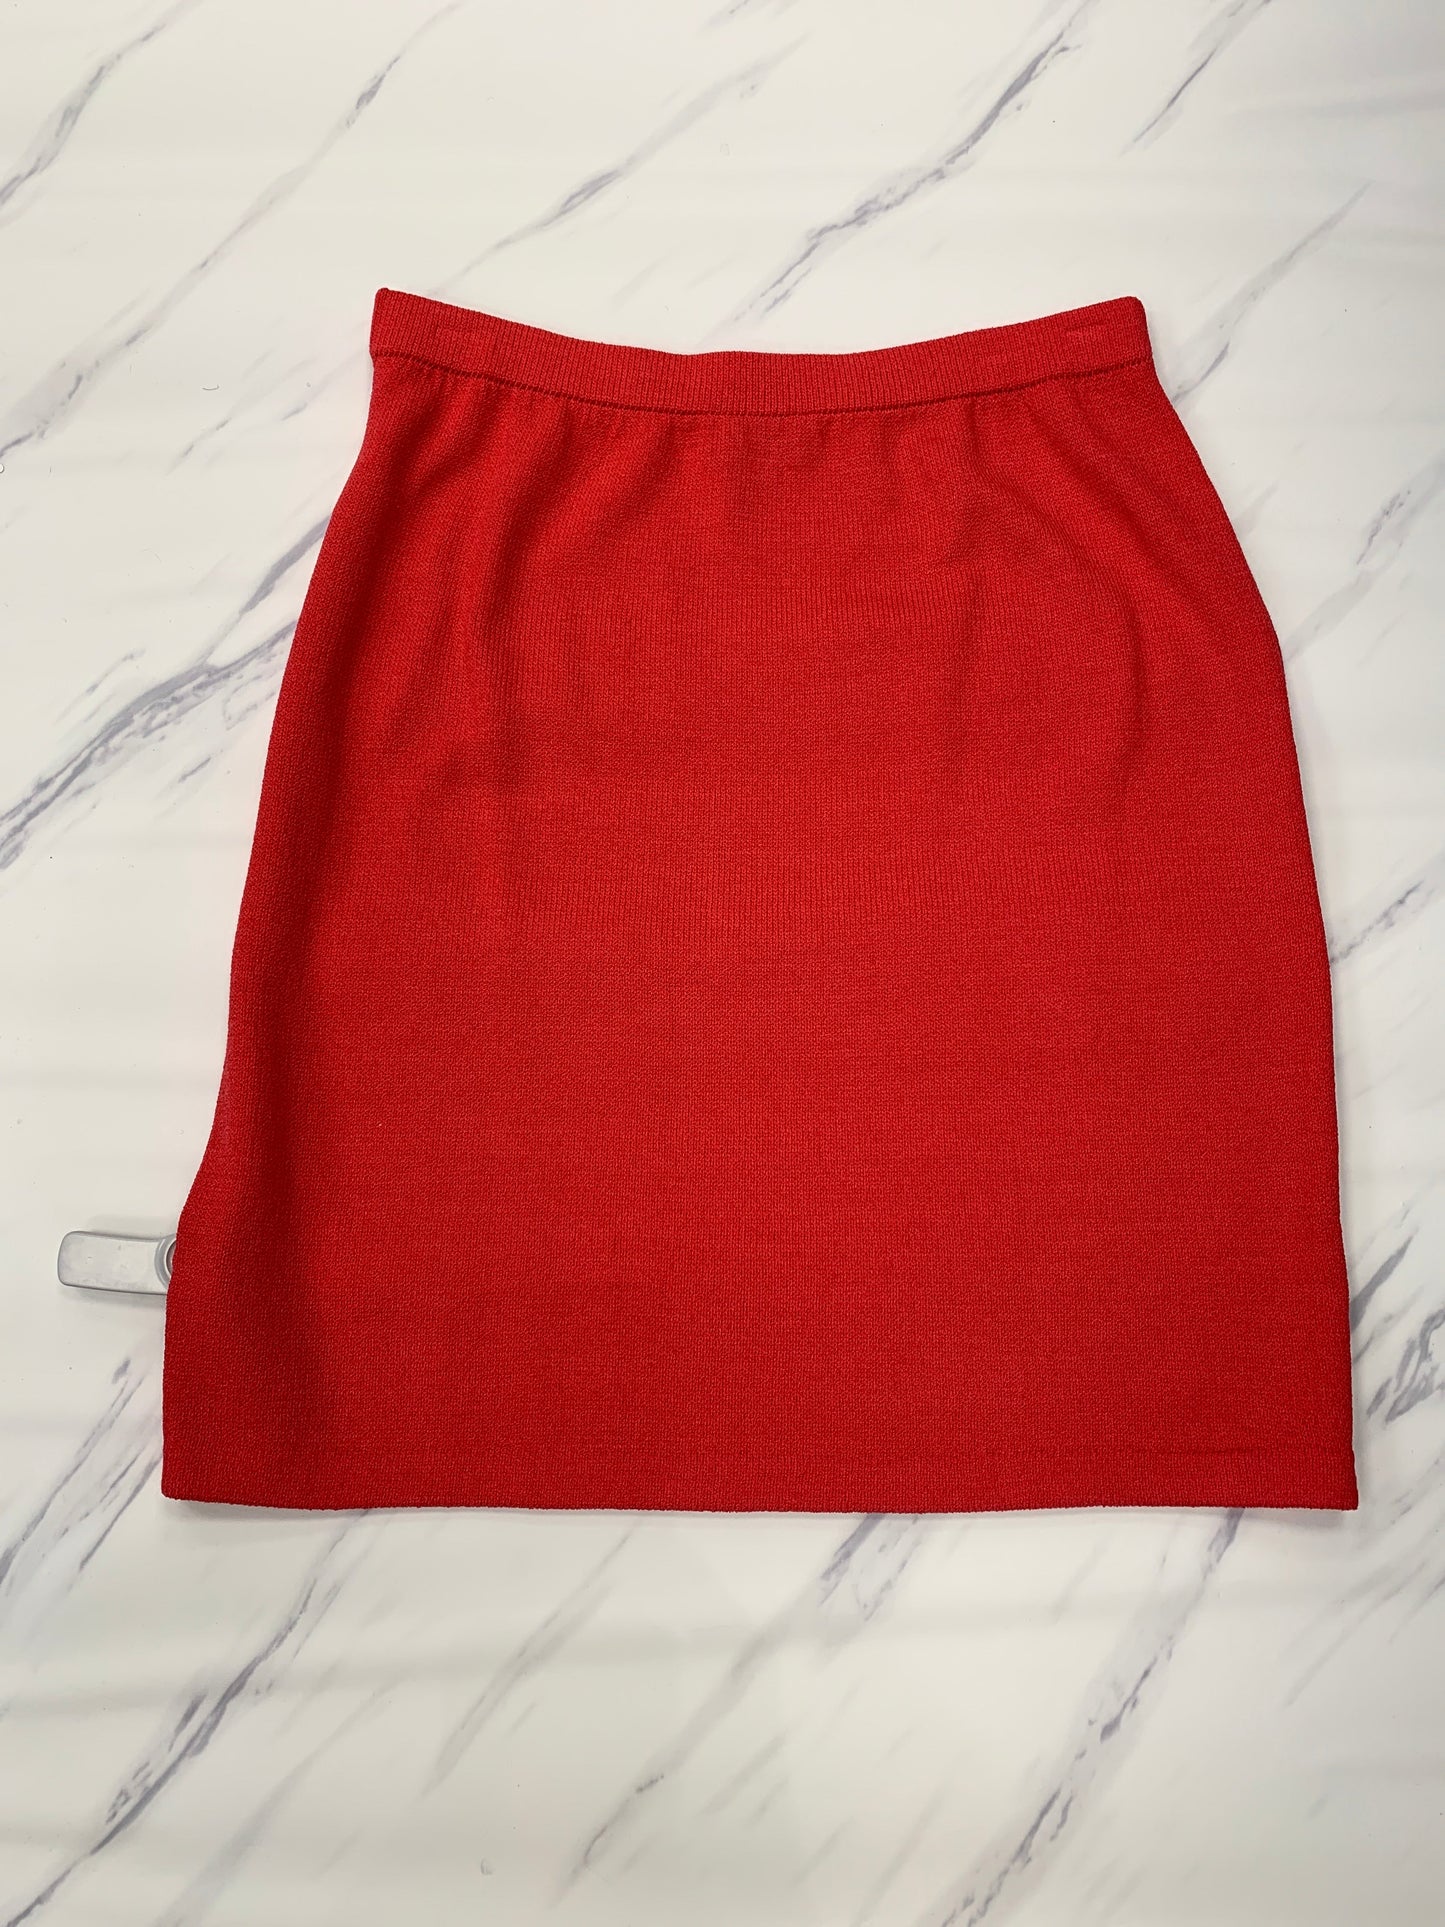 Skirt Designer St John Collection, Size 14